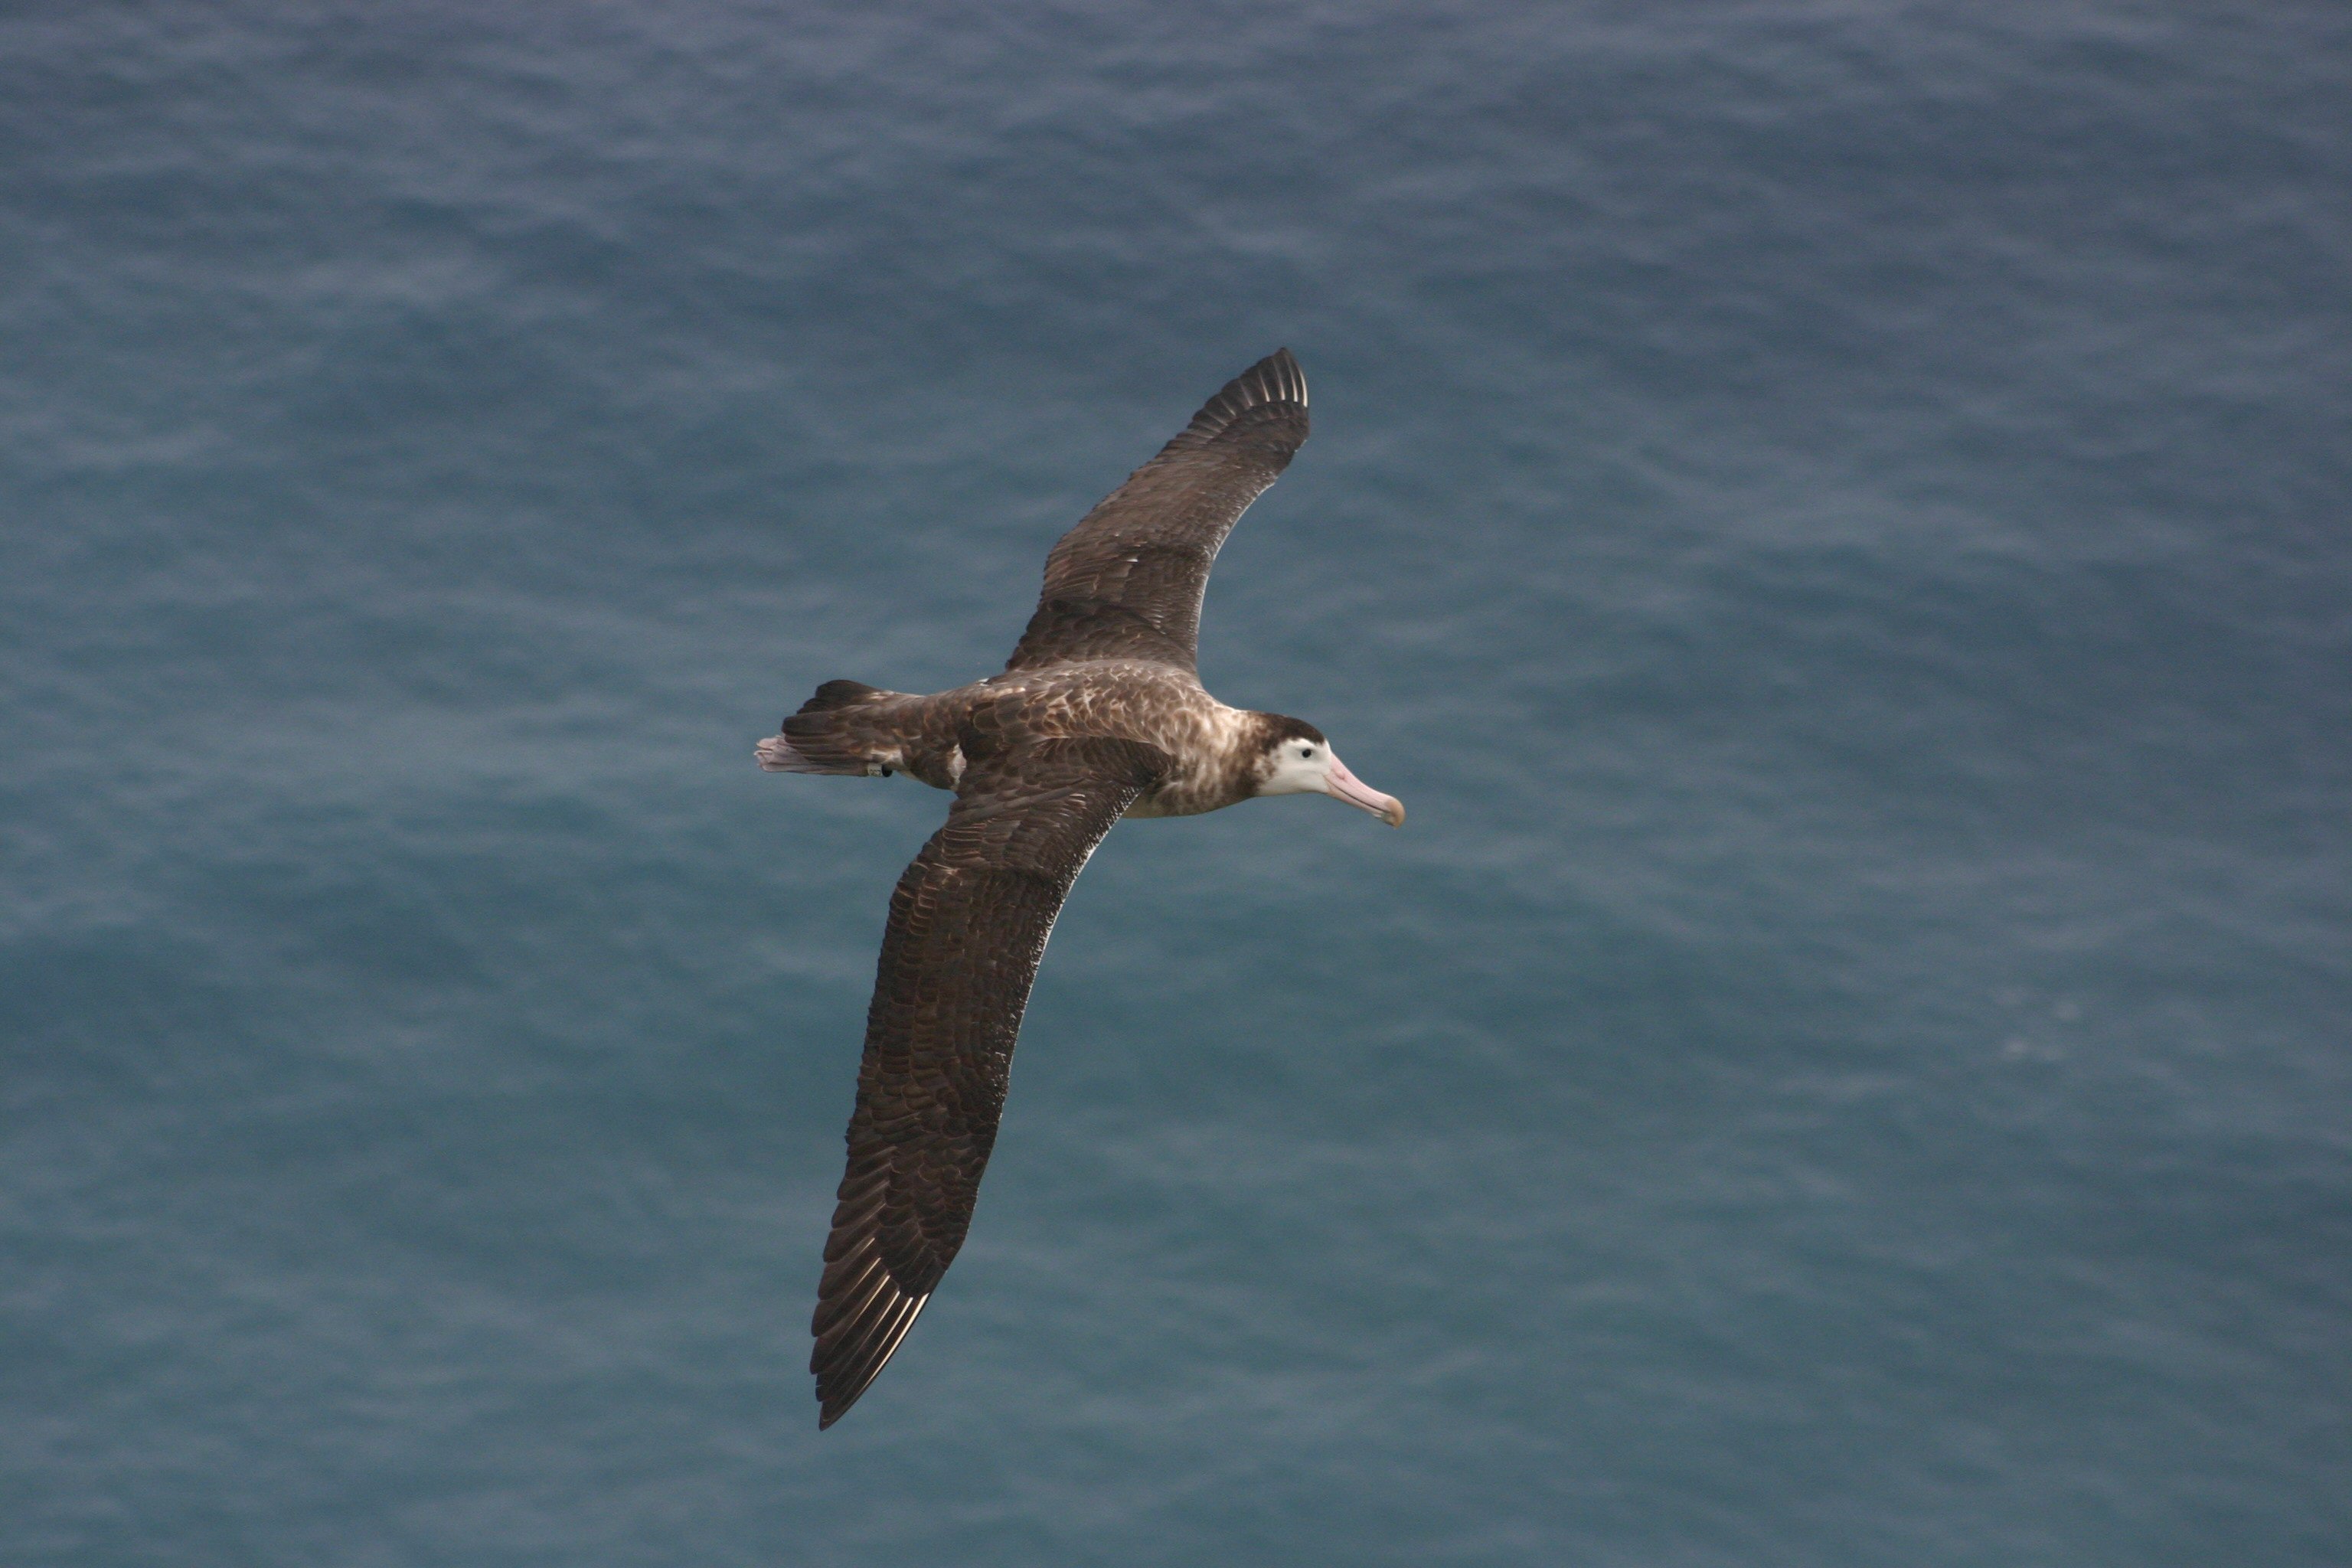 https://commons.wikimedia.org/wiki/File:Albatros_d%27amsterdam.jpg